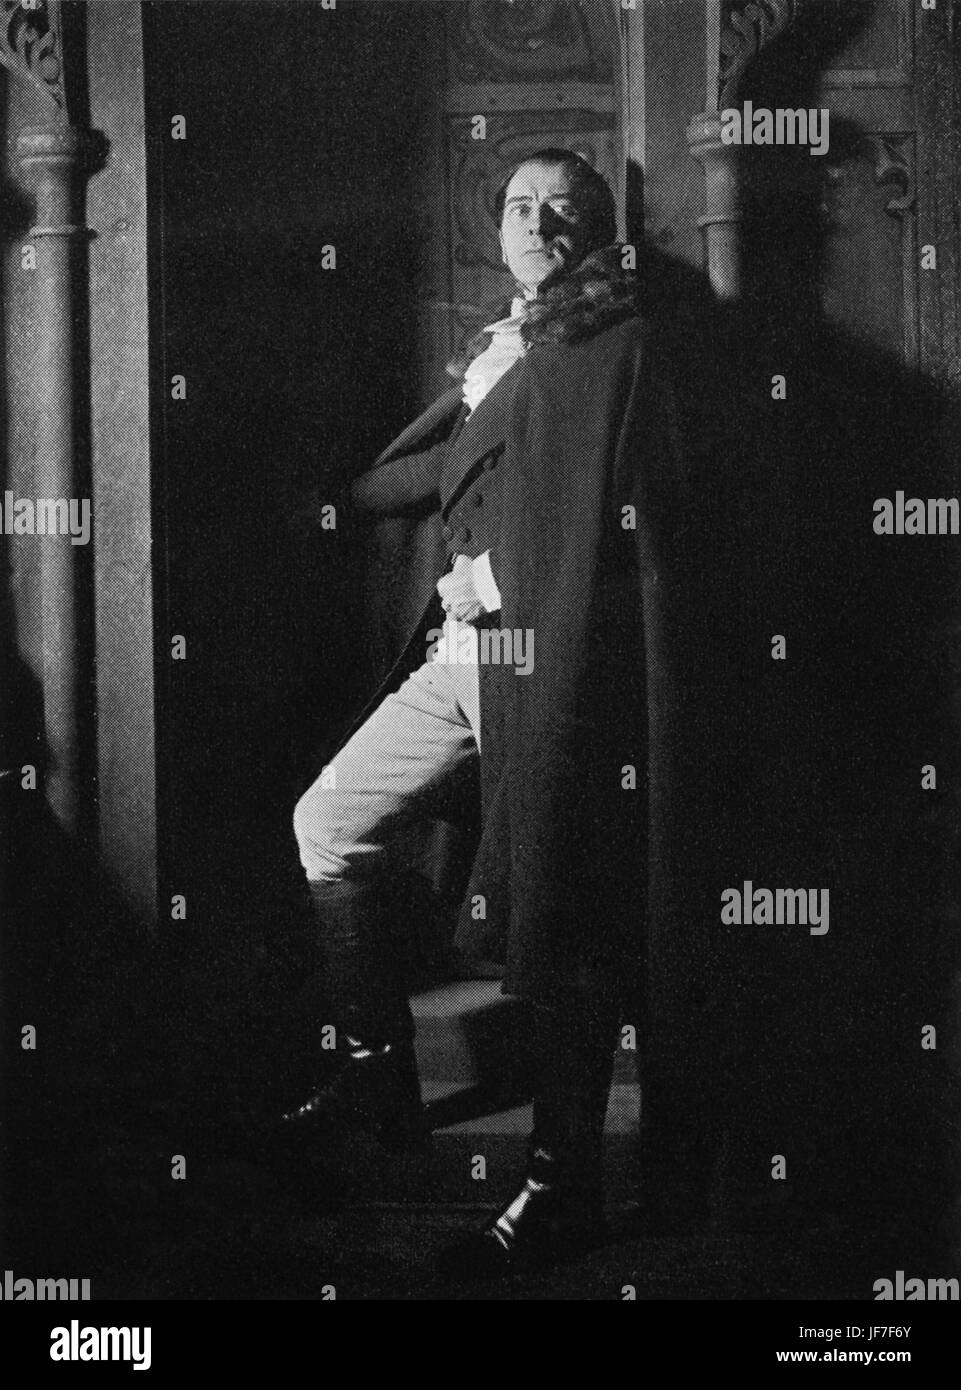 "Jane Eyre' con Reginald Tate come Mr Rochester in Cirillo Phillips 's produzione al Queen's Theatre, Londra, 1936. Basato sul romanzo di Charlotte Bronte. RT, attore inglese, 13 Dicembre 1896 - 23 agosto 1955. Foto Stock